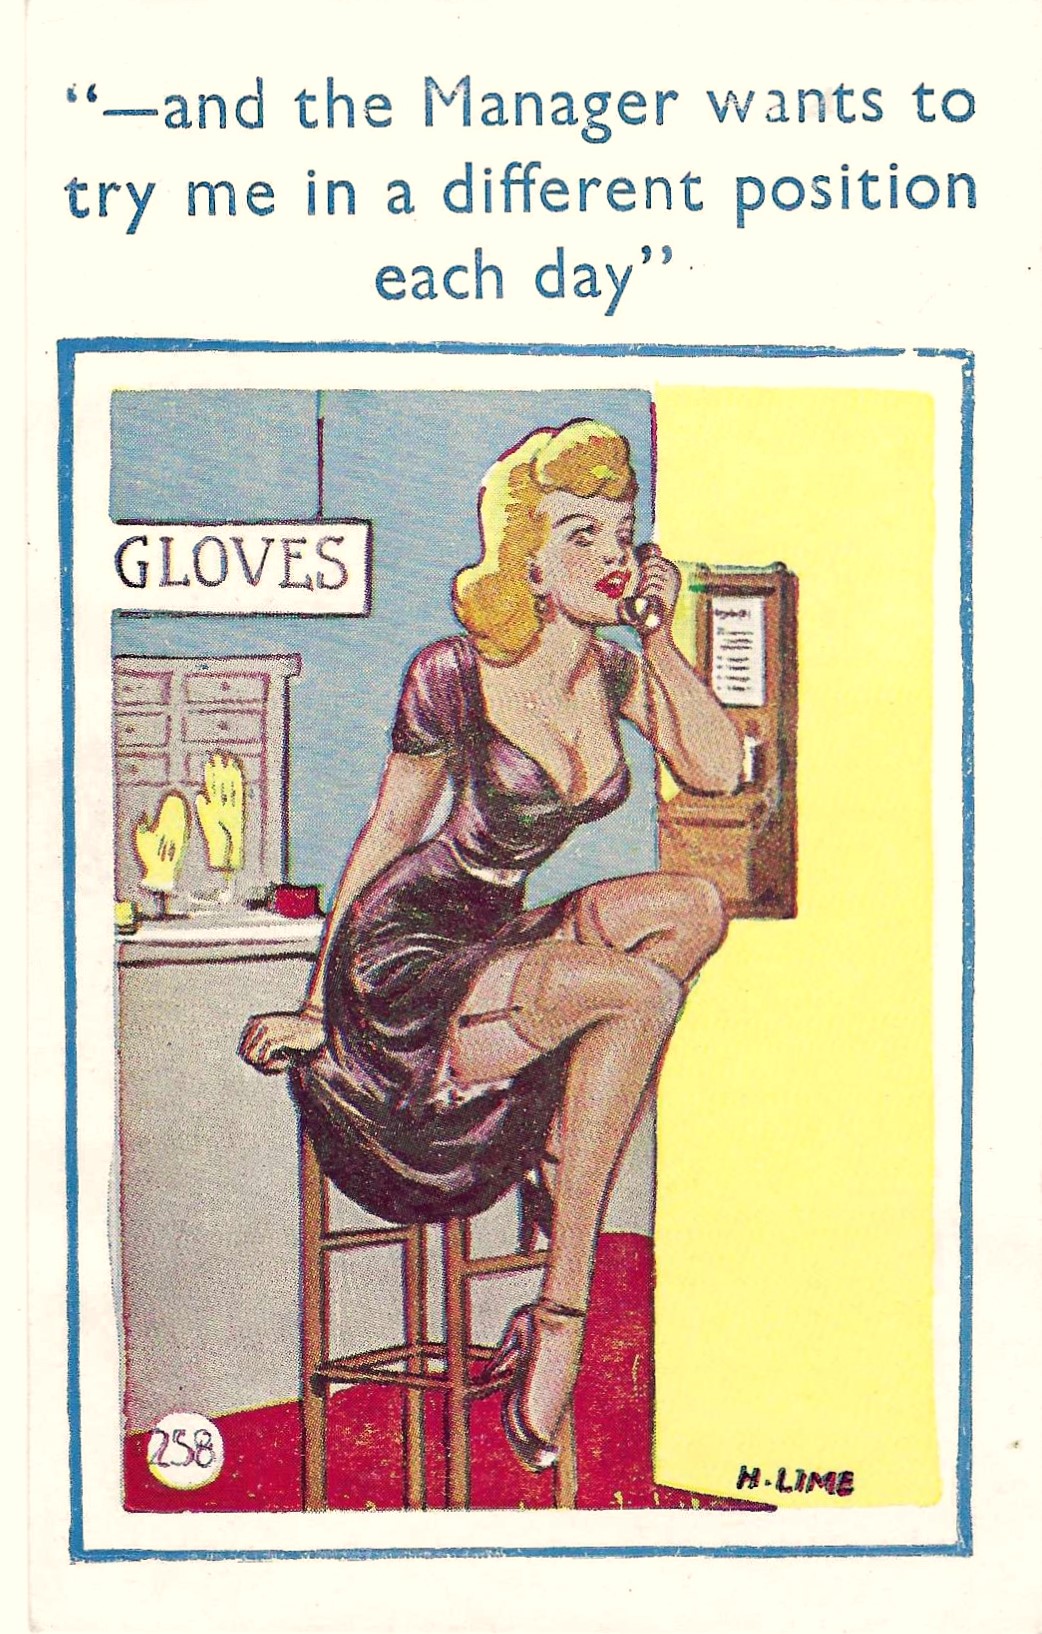 Girl in glove shop